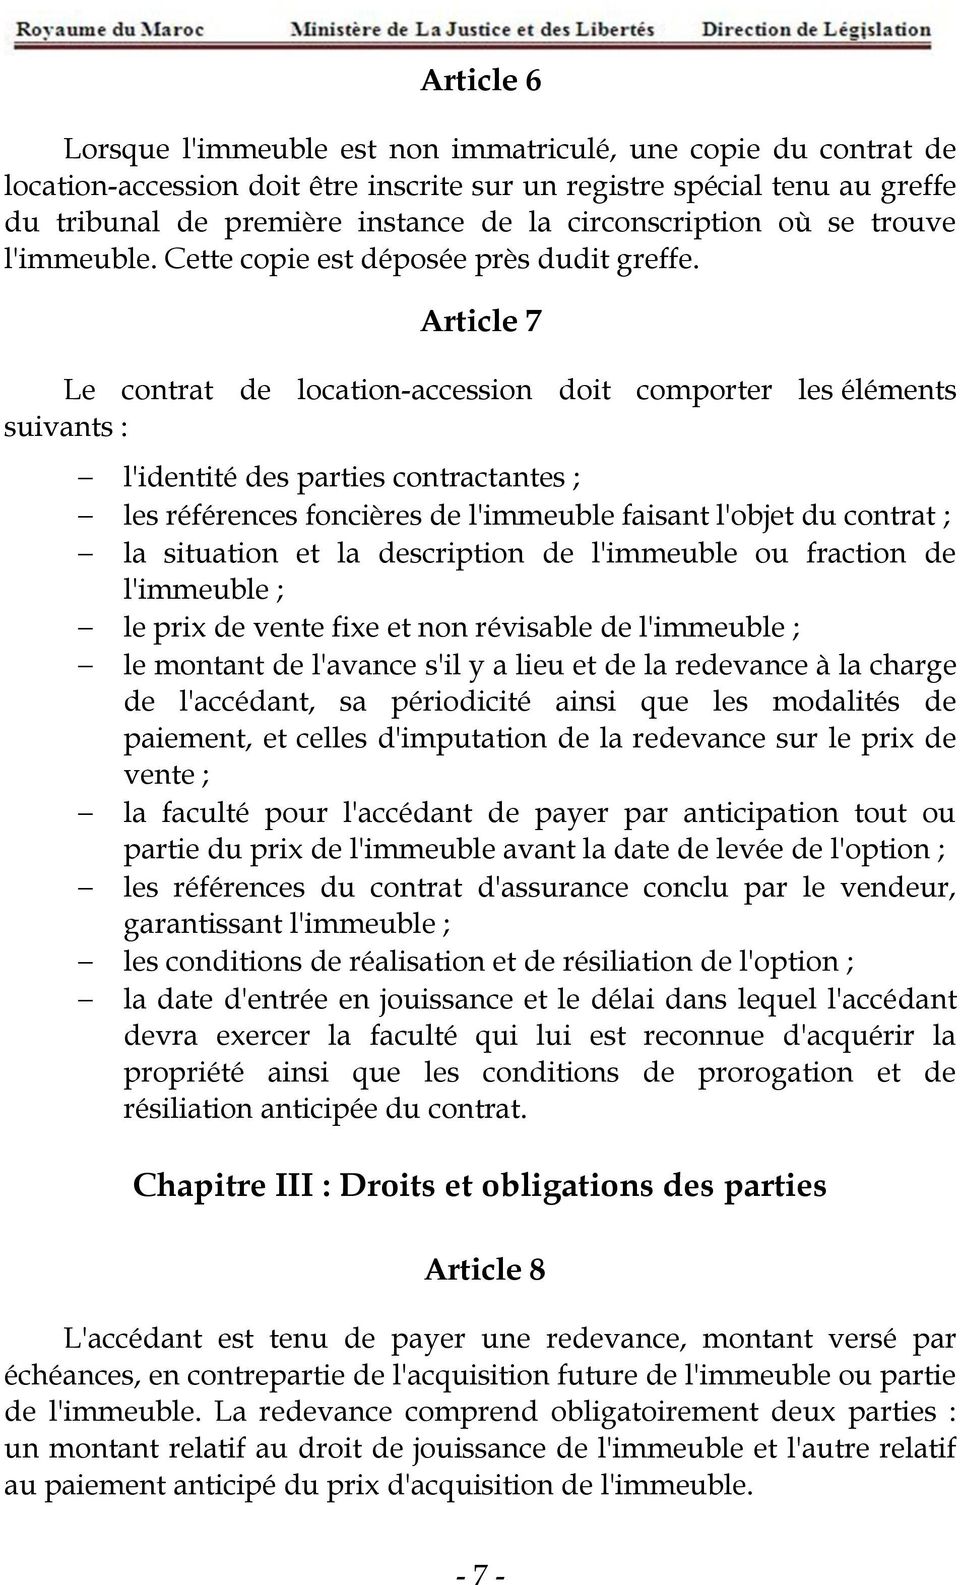 Article 7 Le contrat de location-accession doit comporter les éléments suivants : l'identité des parties contractantes ; les références foncières de l'immeuble faisant l'objet du contrat ; la